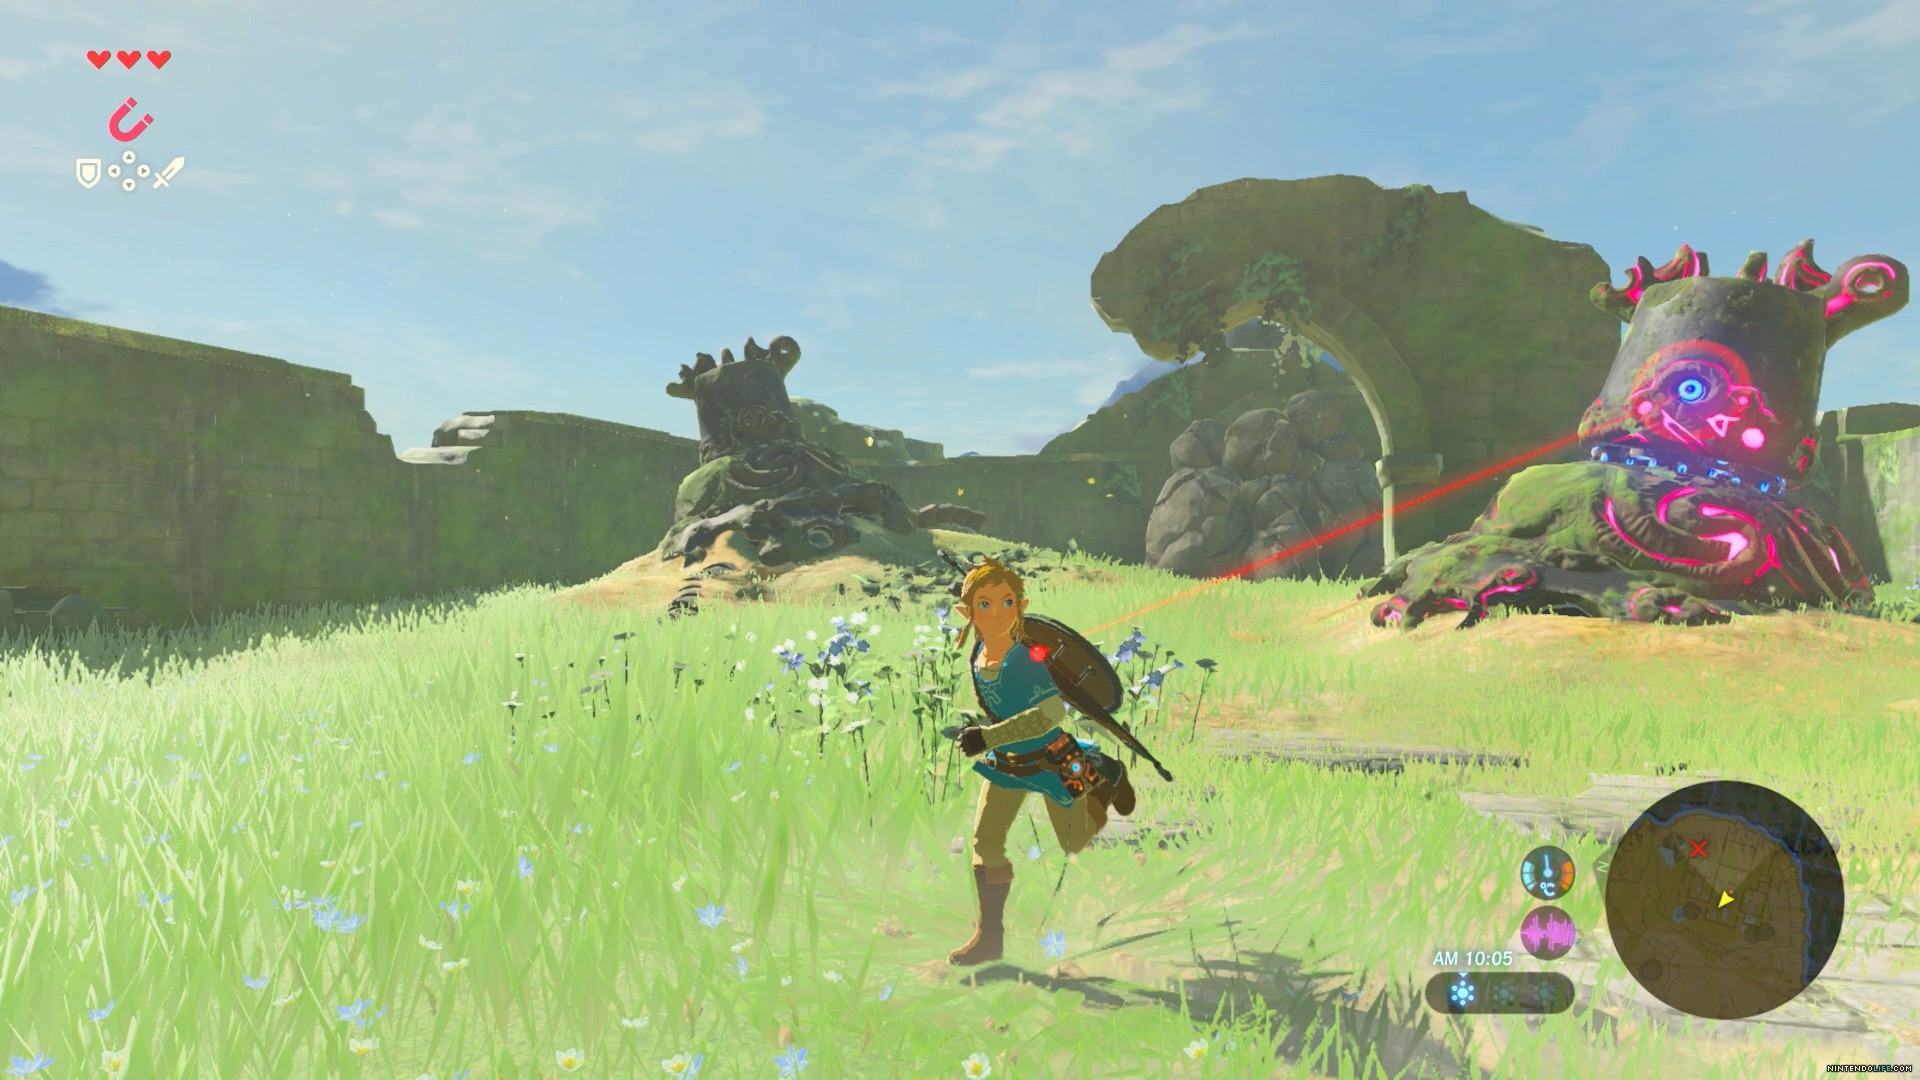 Buy The Legend of Zelda: Breath of the Wild (Nintendo Switch